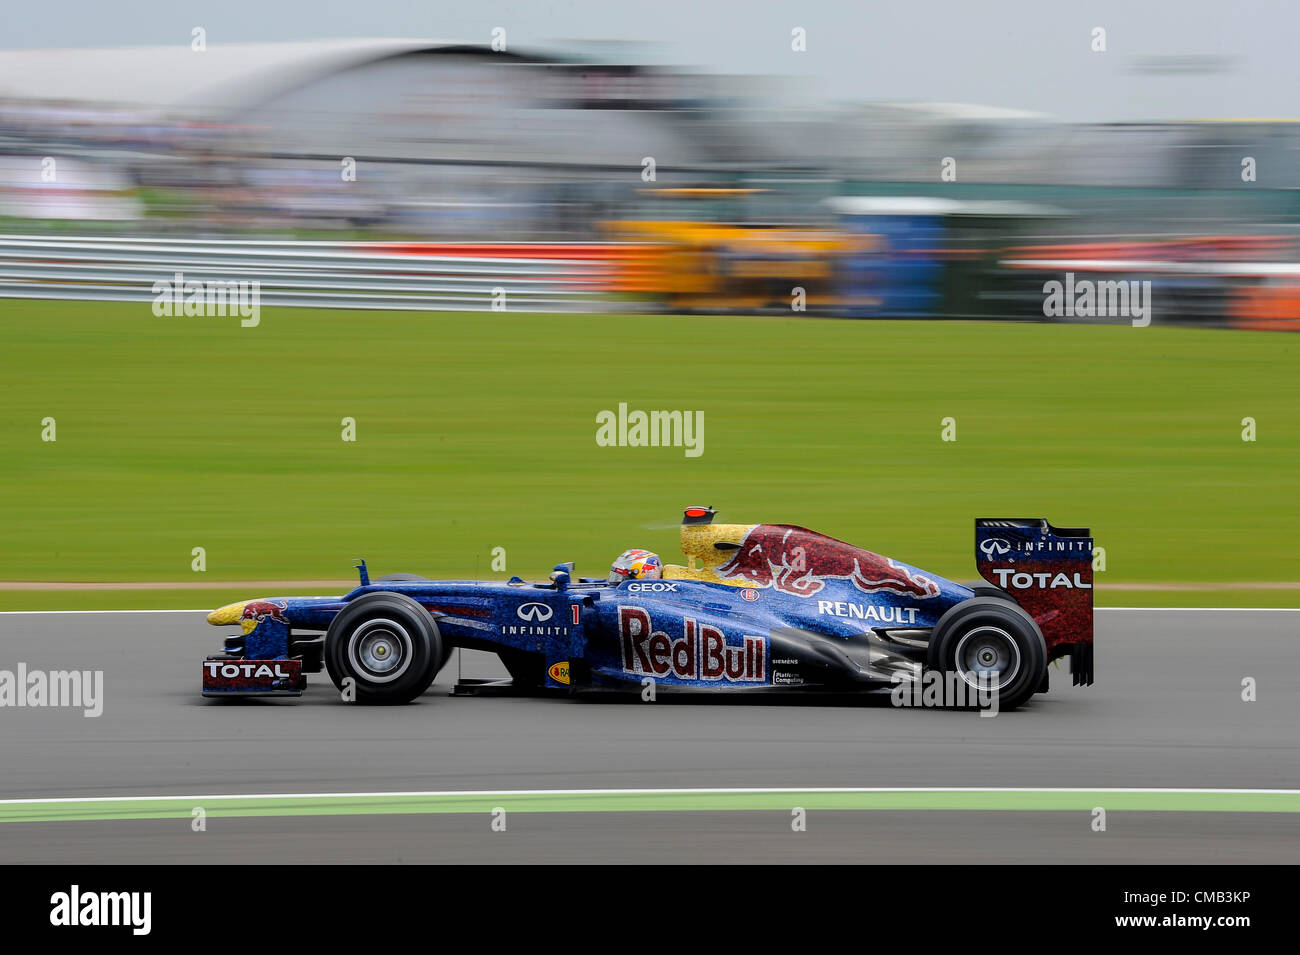 08.07.2012 Towcester, England. Sebastian Vettel und Red Bull Racing in Aktion während des Rennens beim britischen Grand Prix Santander, Runde 9 der 2012 FIA Formel 1 Weltmeisterschaft in Silverstone. Stockfoto